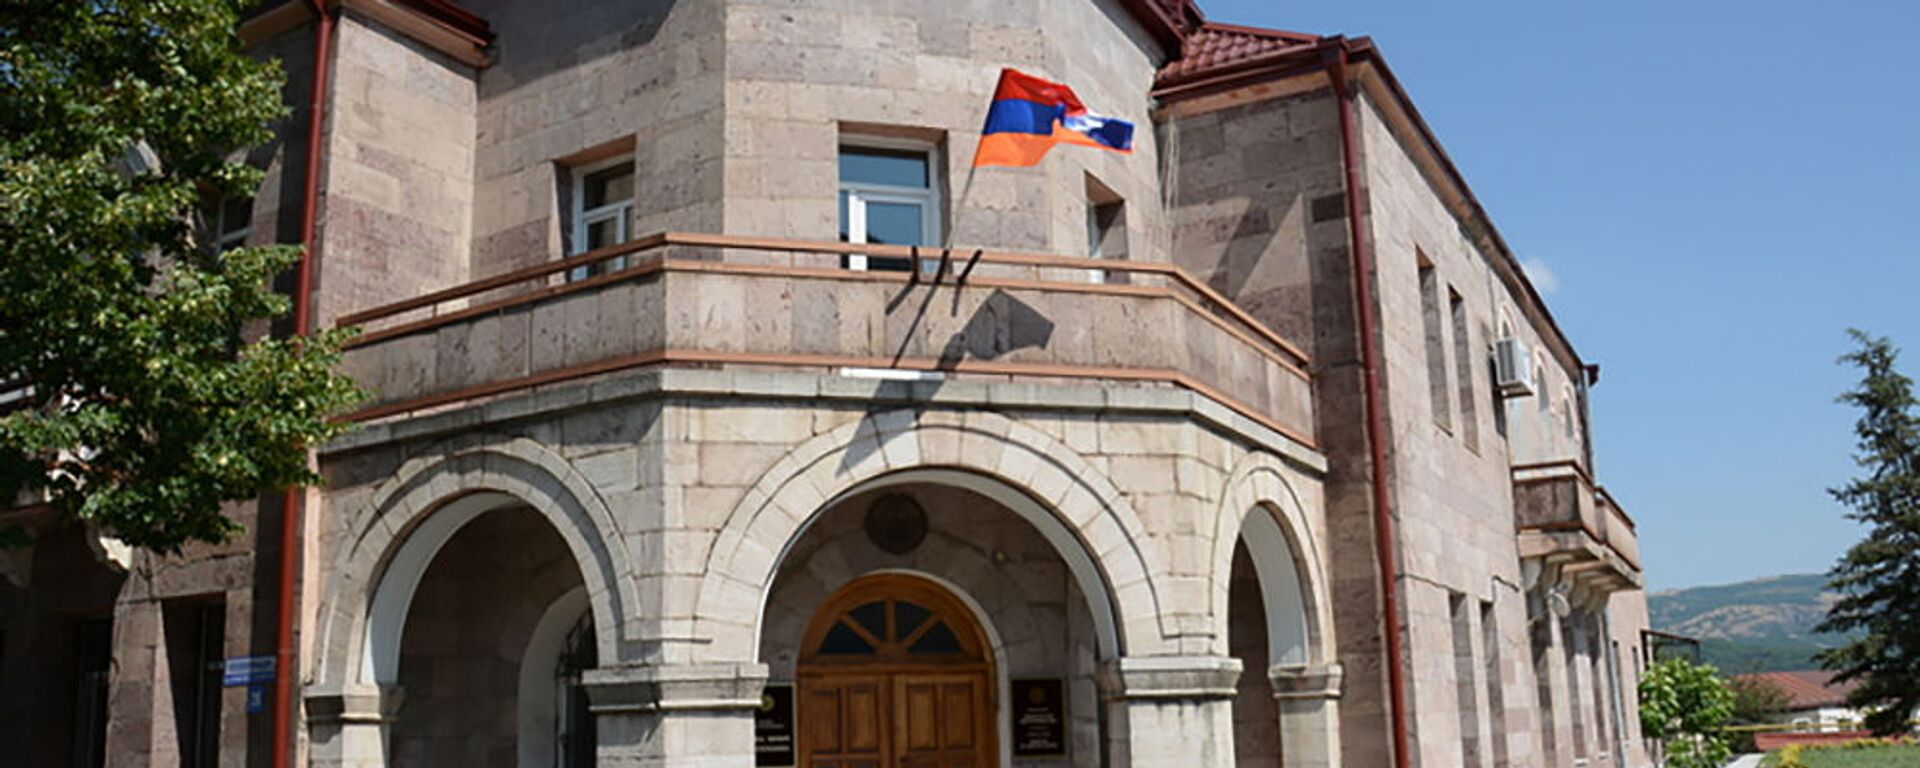 Здание Министерства иностранных дел Карабаха - Sputnik Արմենիա, 1920, 13.07.2021